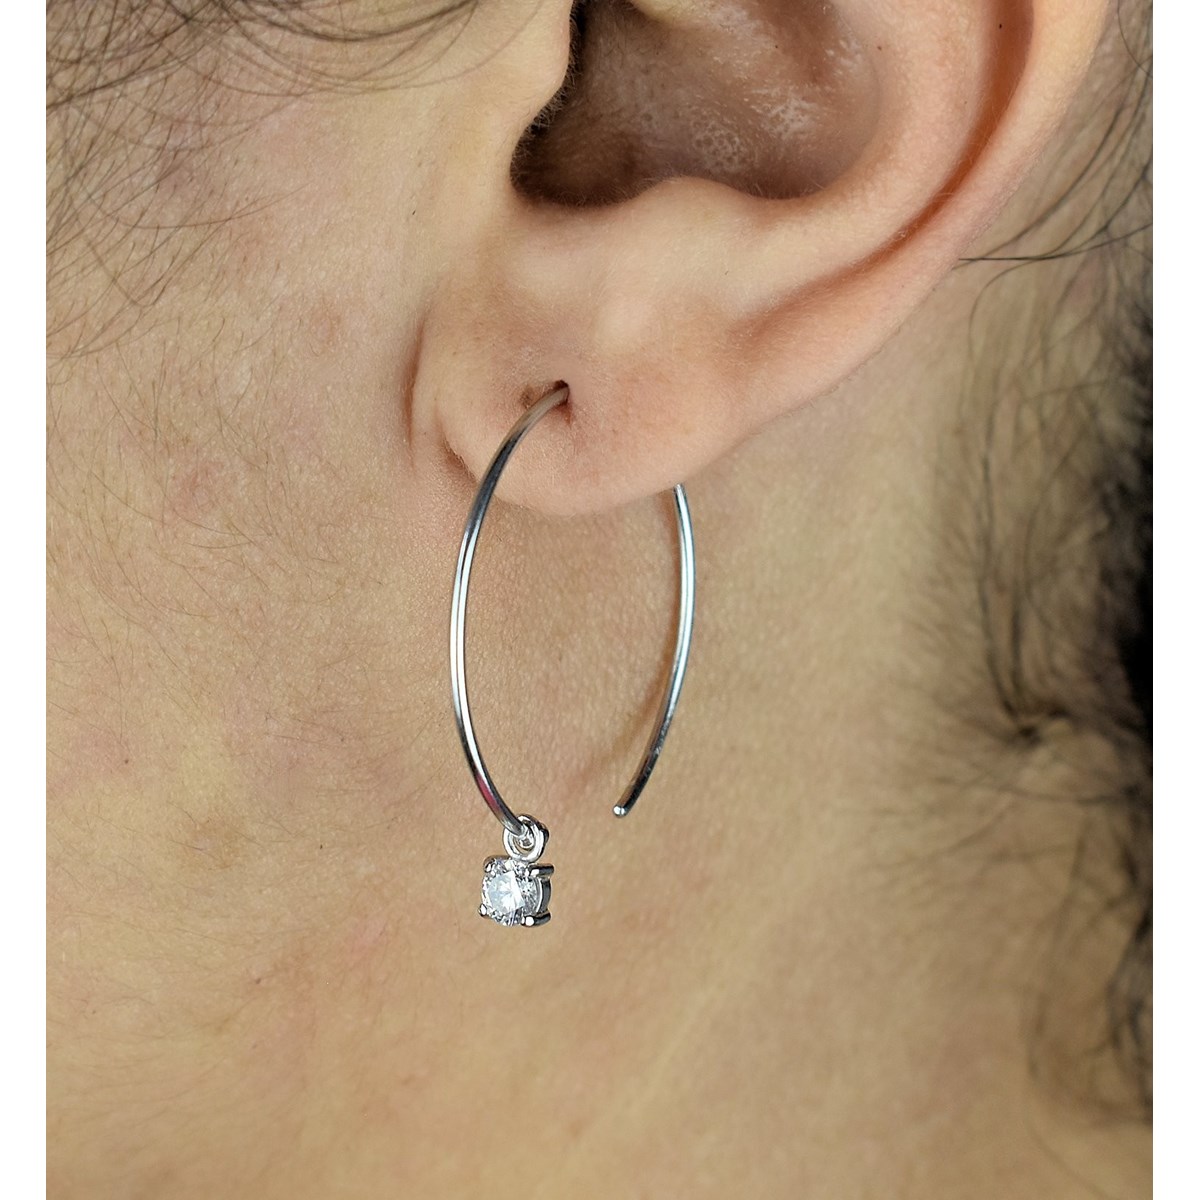 Boucles d'oreilles créole oxyde de zirconium pendant Argent 925 Rhodié - vue 2